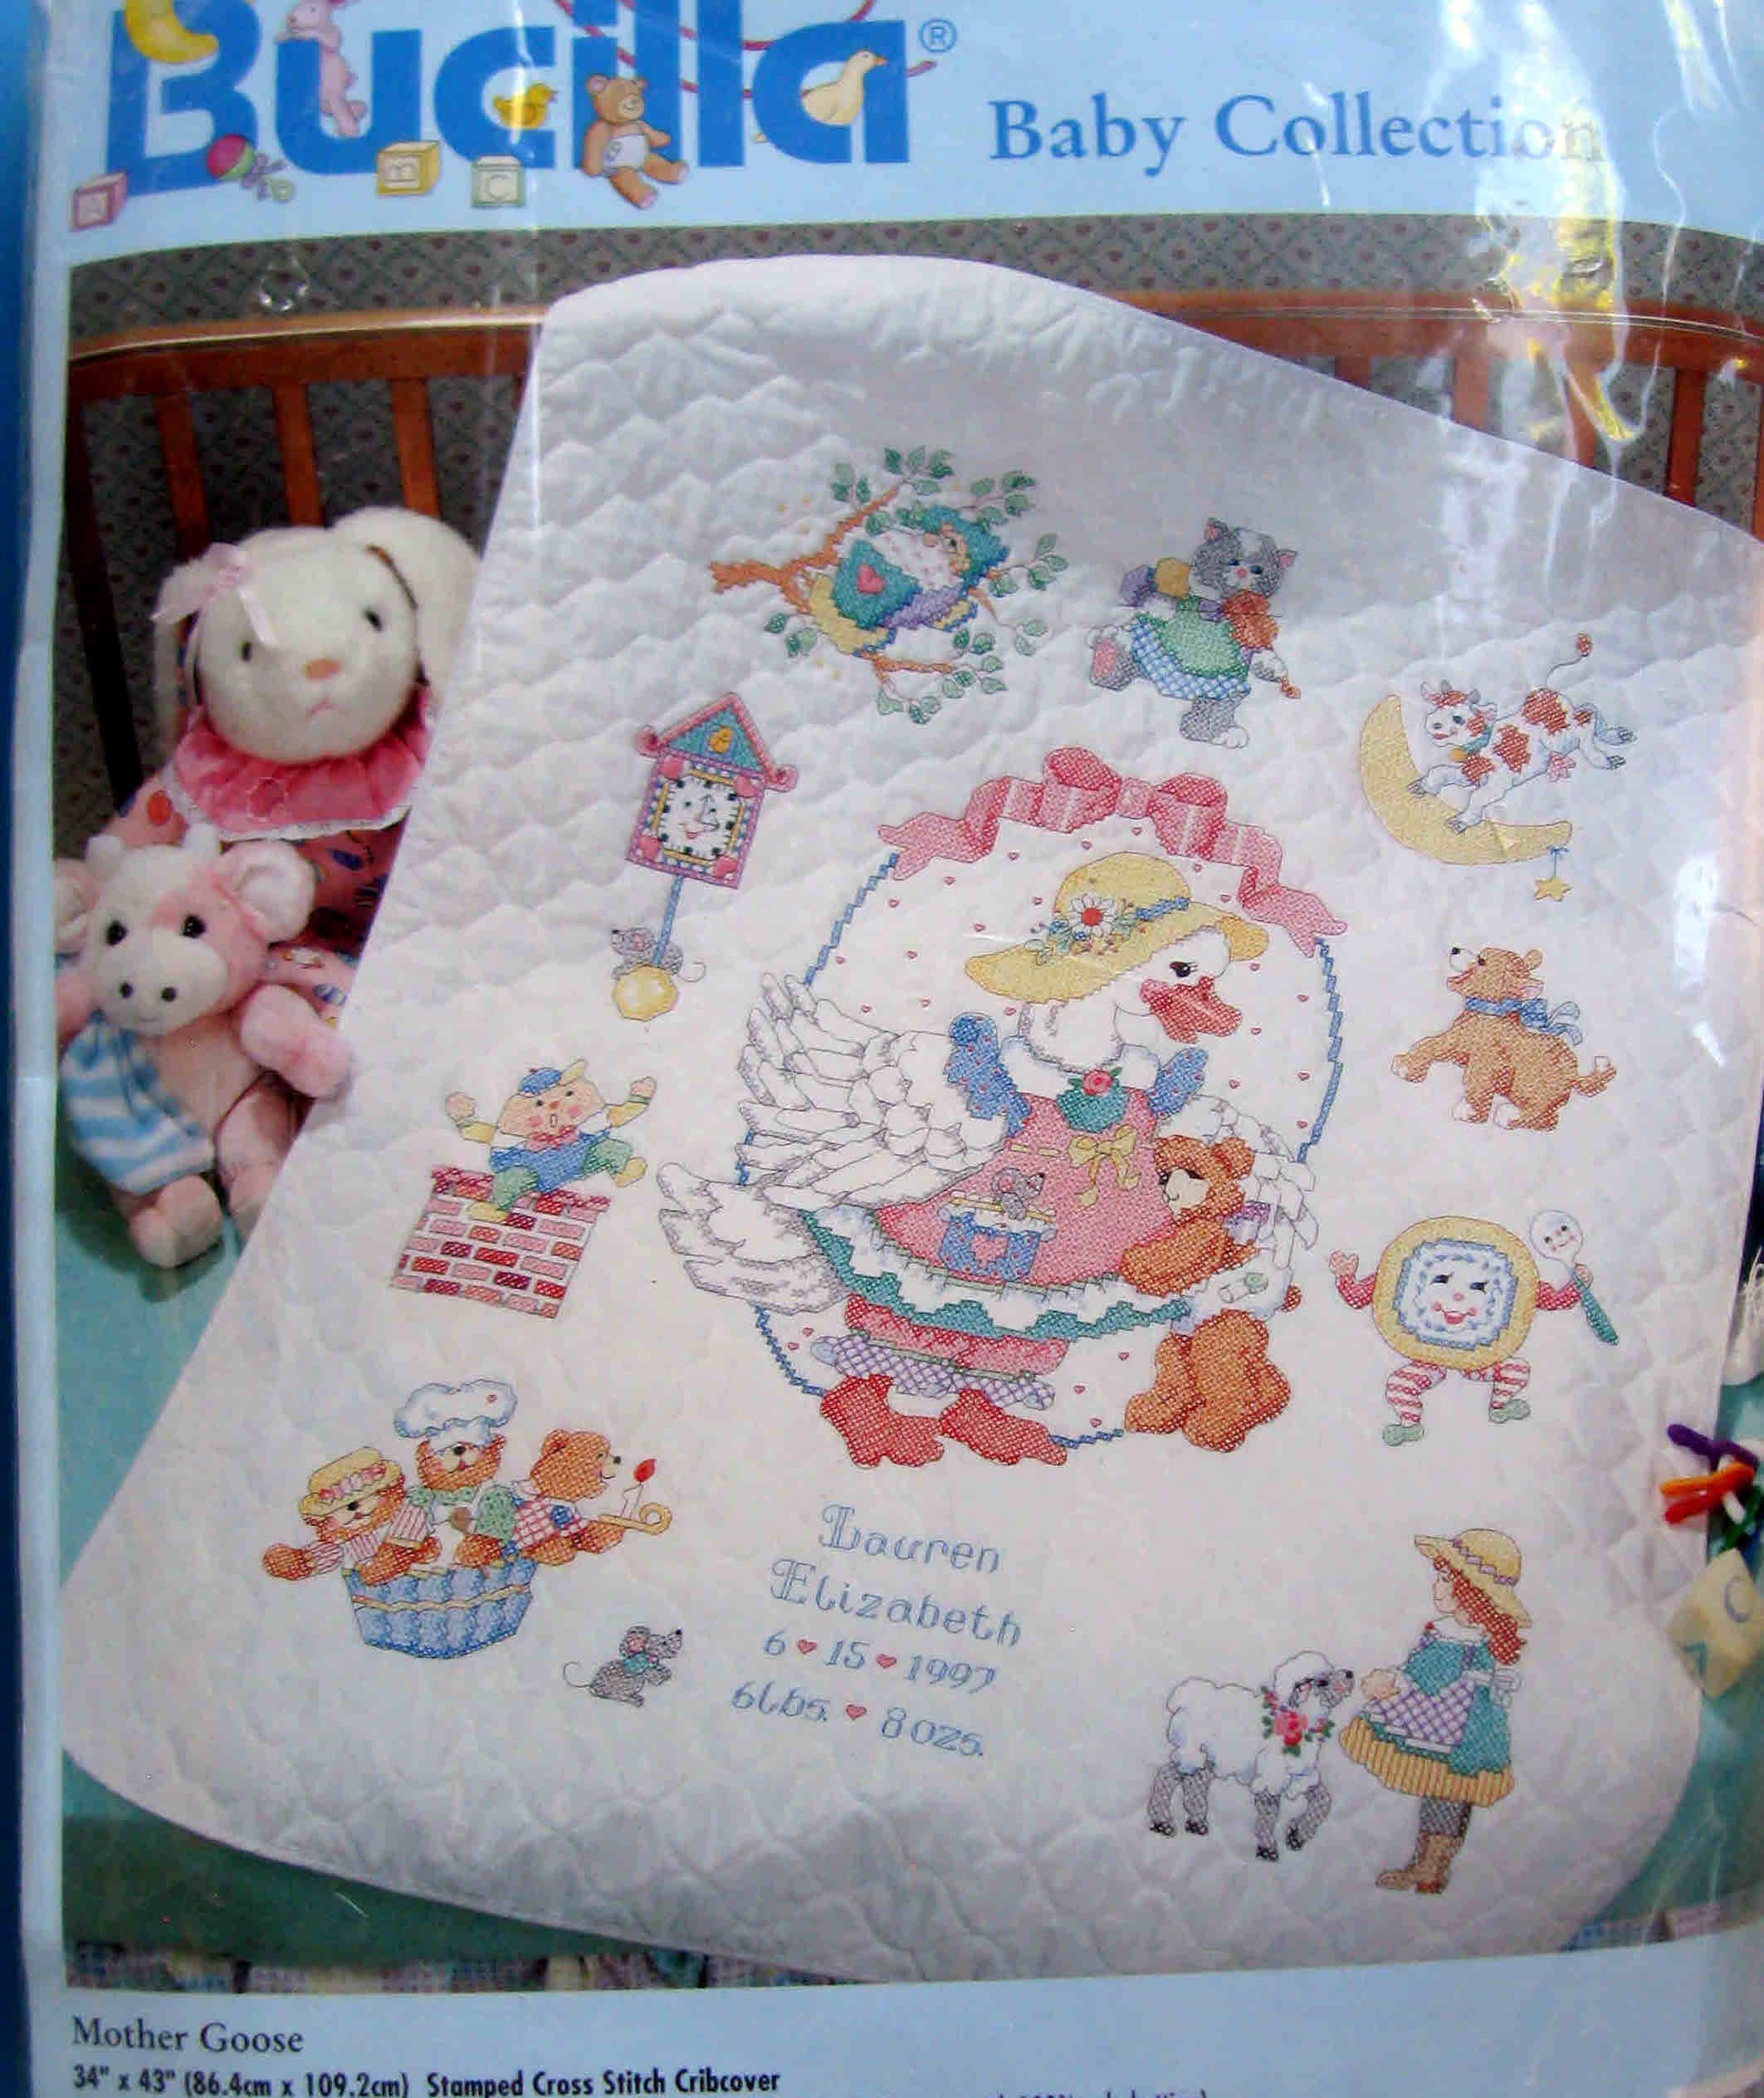 Bucilla Stamped Cross Stitch Baby Quilt Top 34x43-alphabet